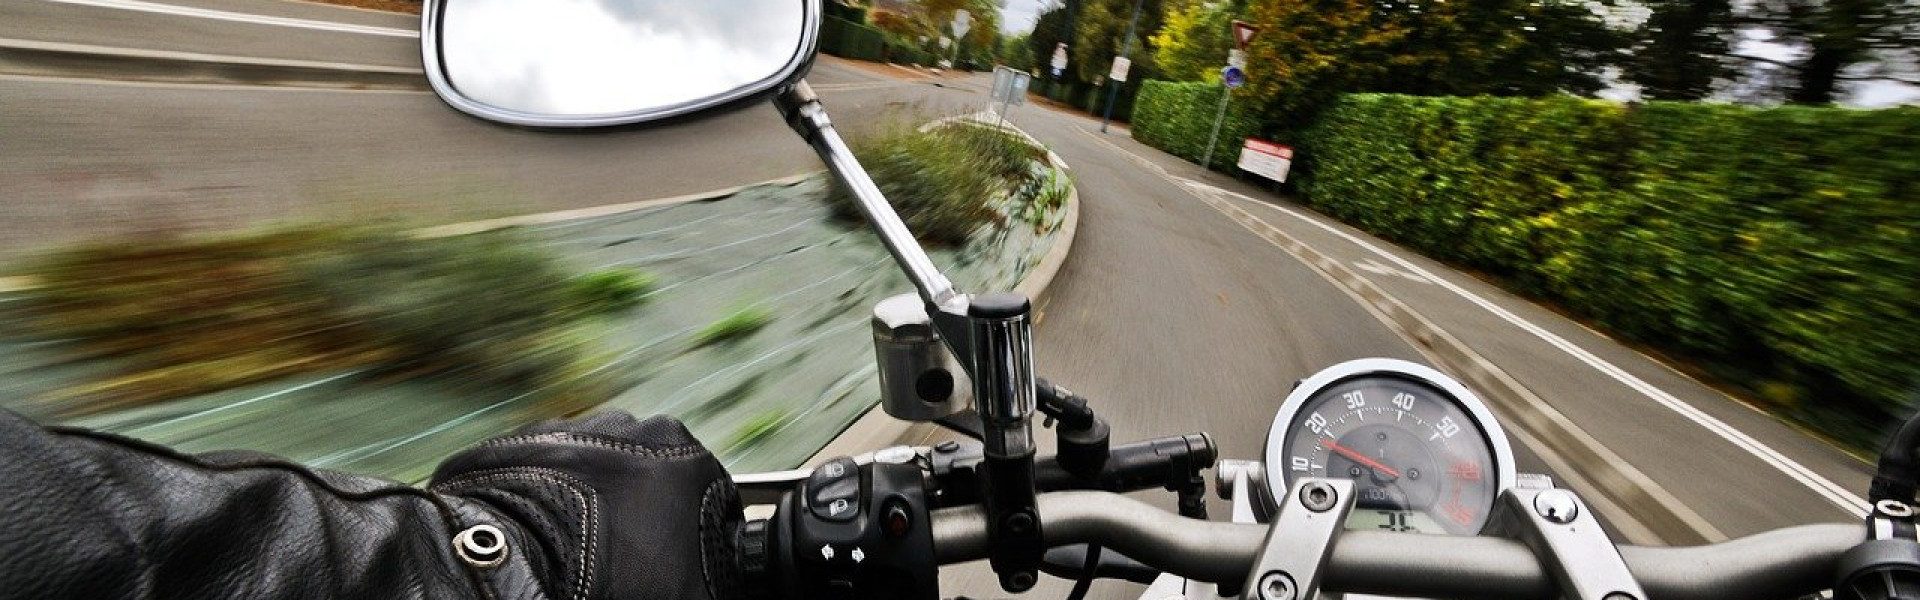 L'équipememnt idéalpour pratiquer la moto sur route